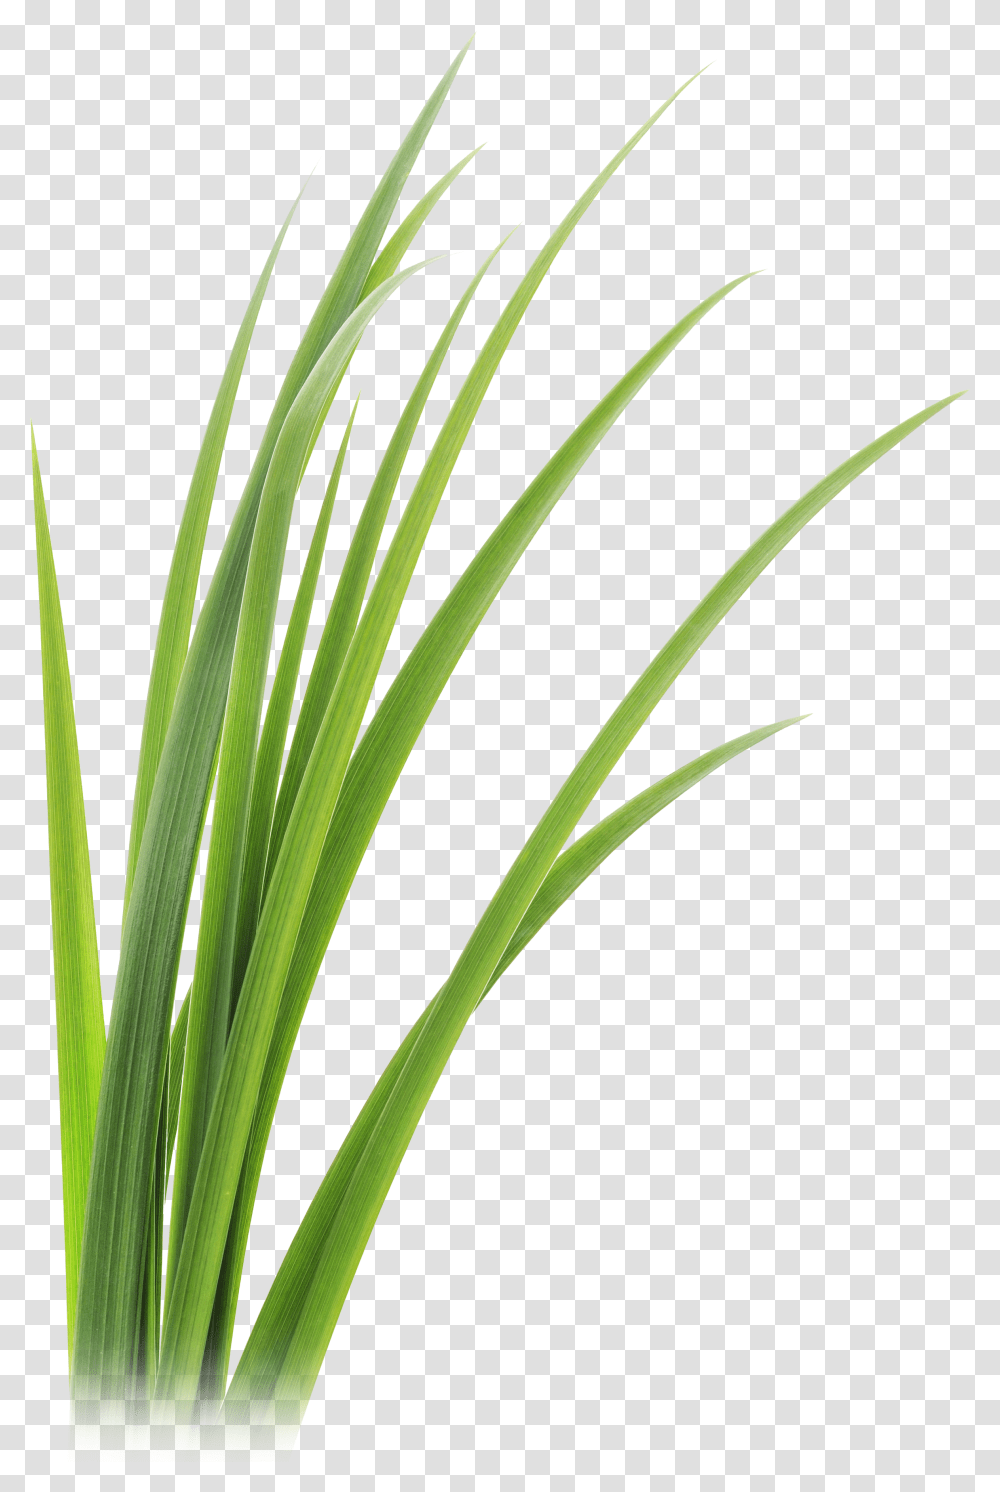 Grass Blades Ginger Grass Transparent Png